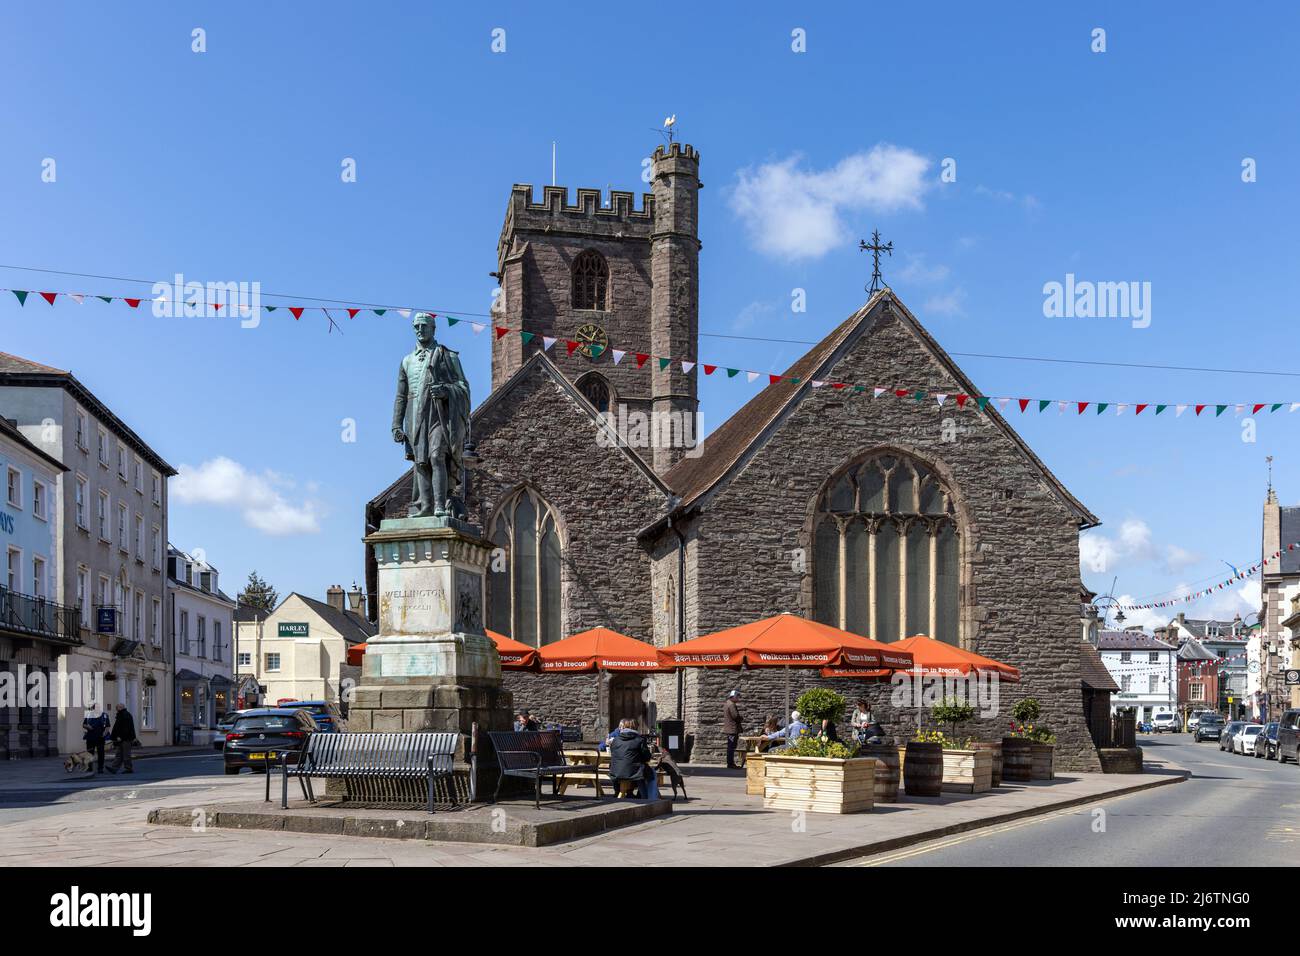 Statue du duc de Wellington et église paroissiale de Saint-Marys dans le centre-ville de Brecon, Powys, pays de Galles du Sud, Royaume-Uni Banque D'Images